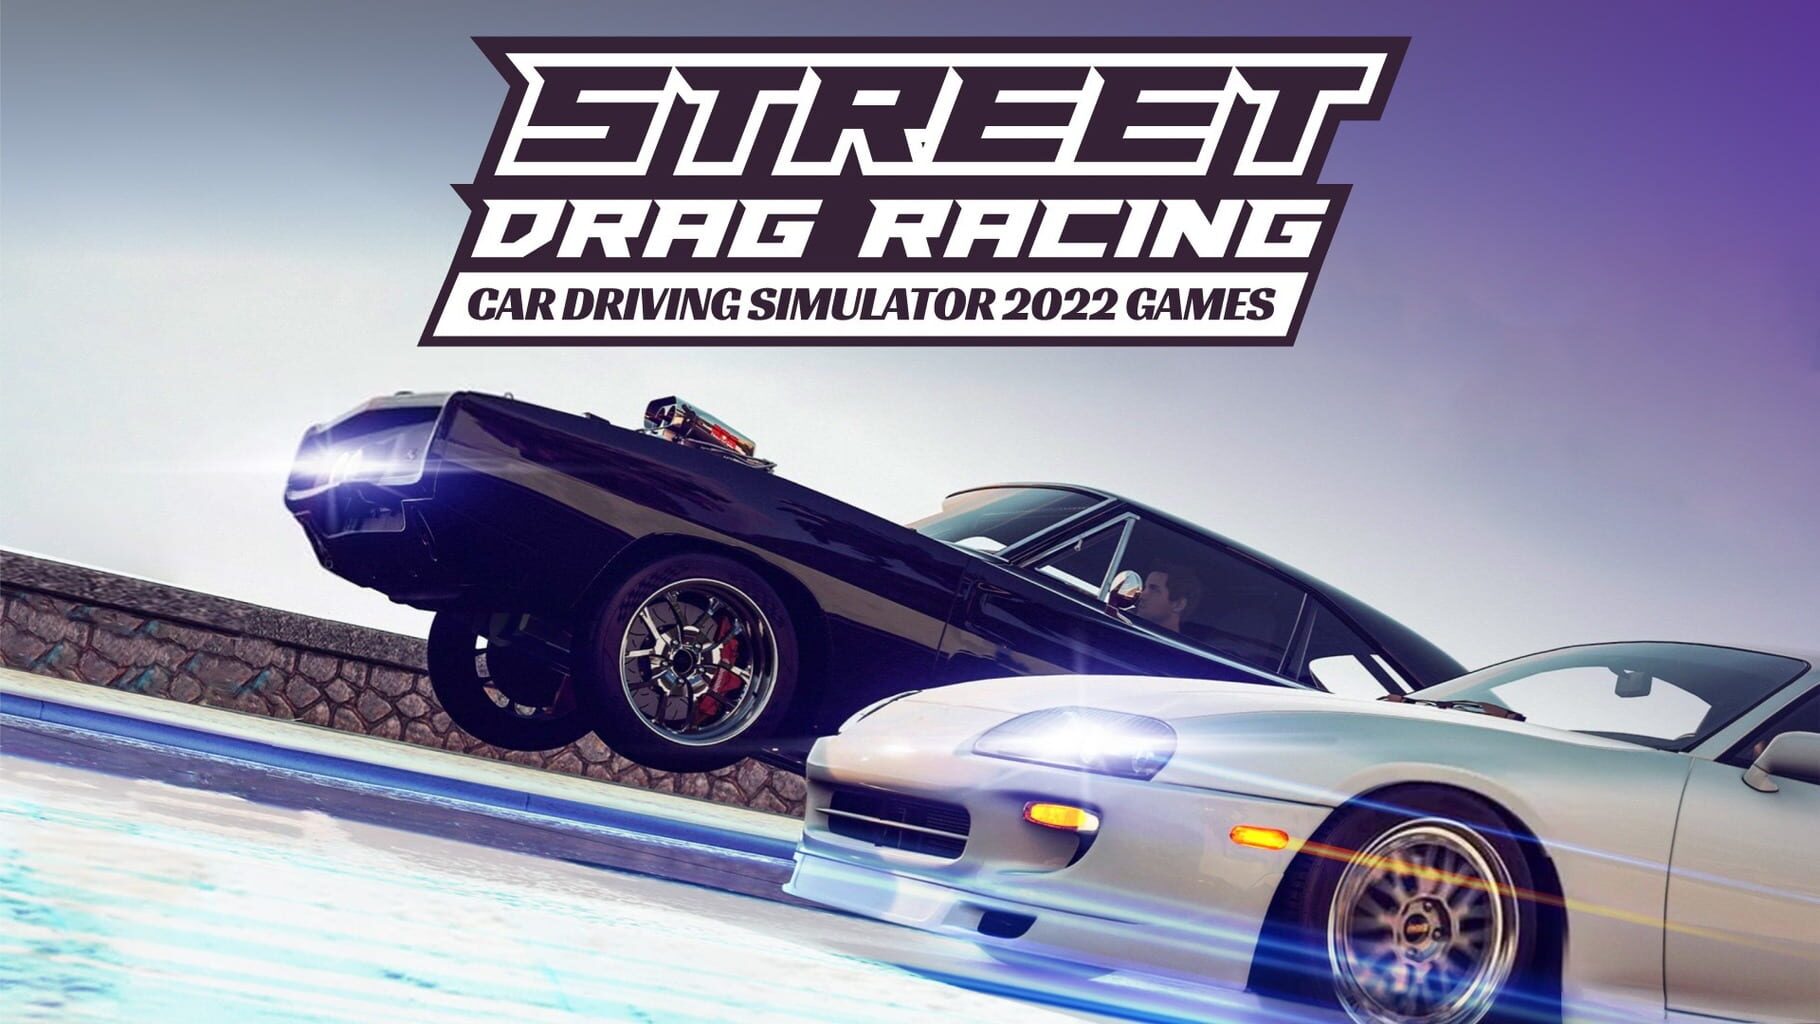 Street Drag Racing Car Driving Simulator 2022 Games artwork